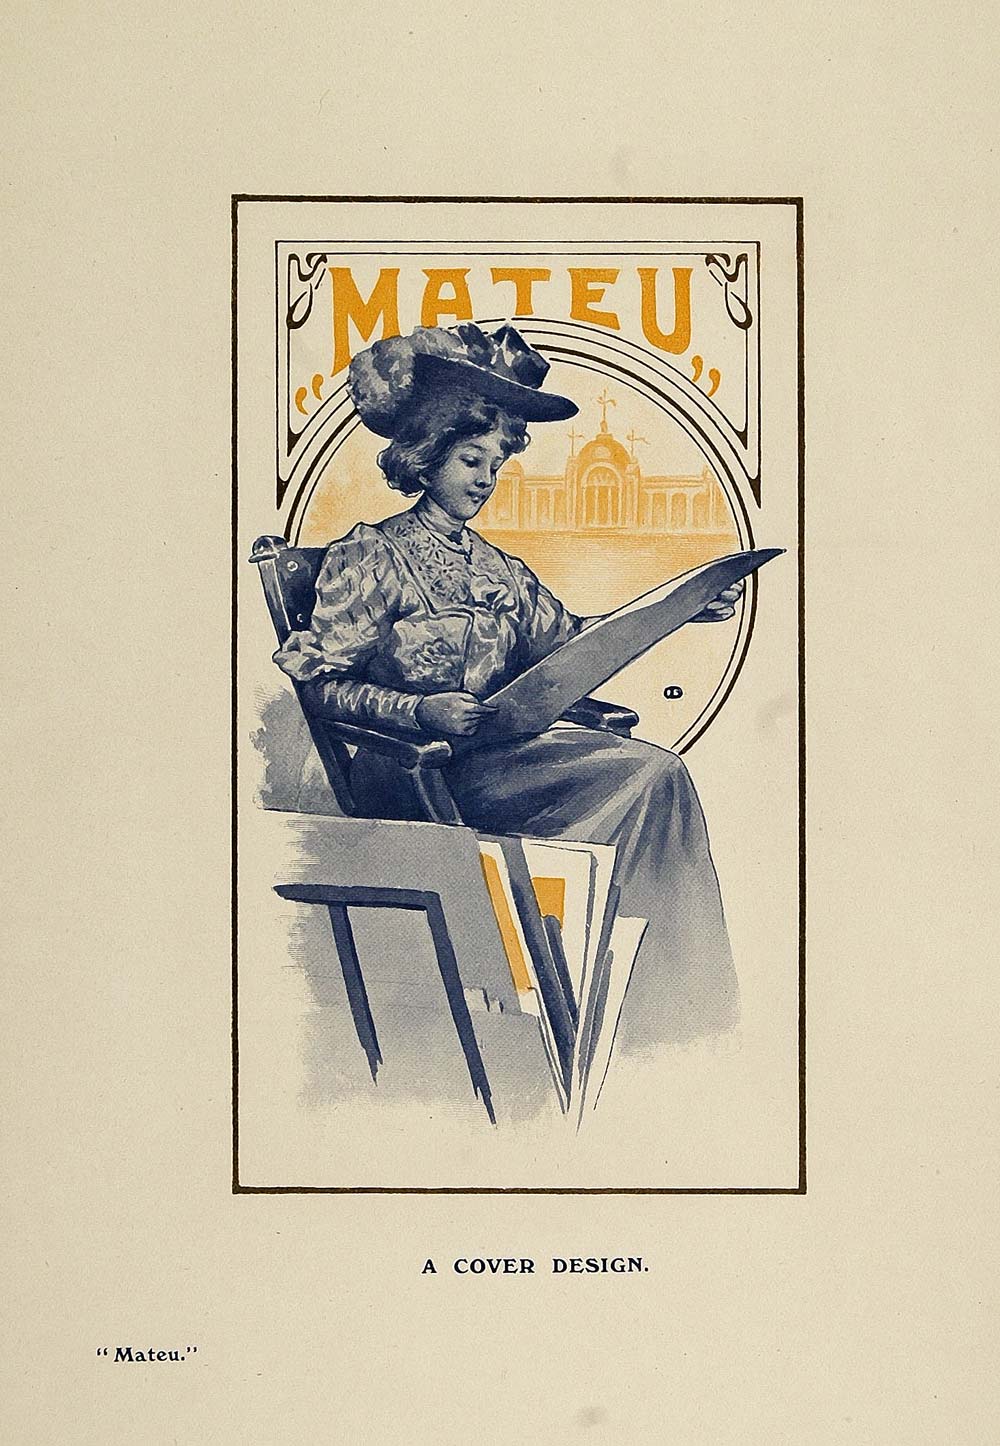 1908 Print Portrait Victorian Woman Mateu Cover Design - ORIGINAL PNR2